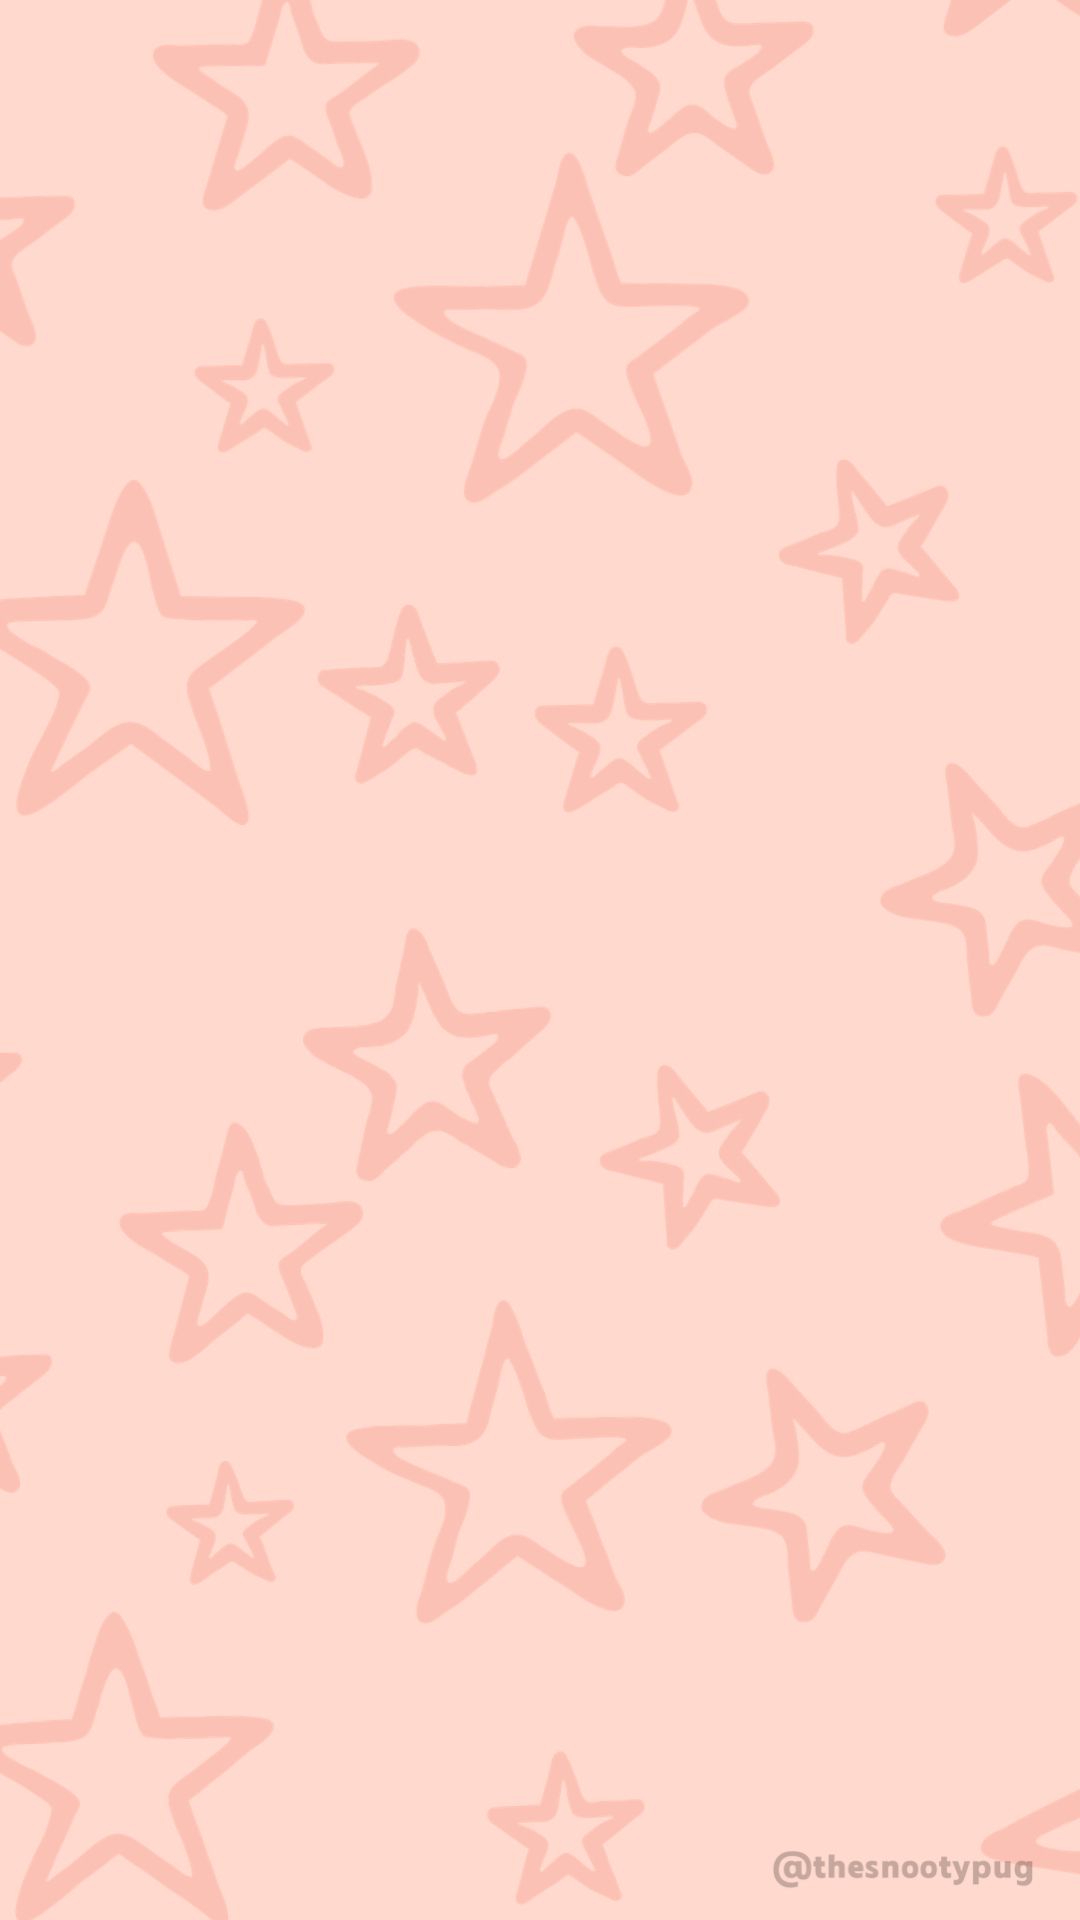 Pink star wallpaper. Star wallpaper, Cute patterns wallpaper, iPhone background wallpaper